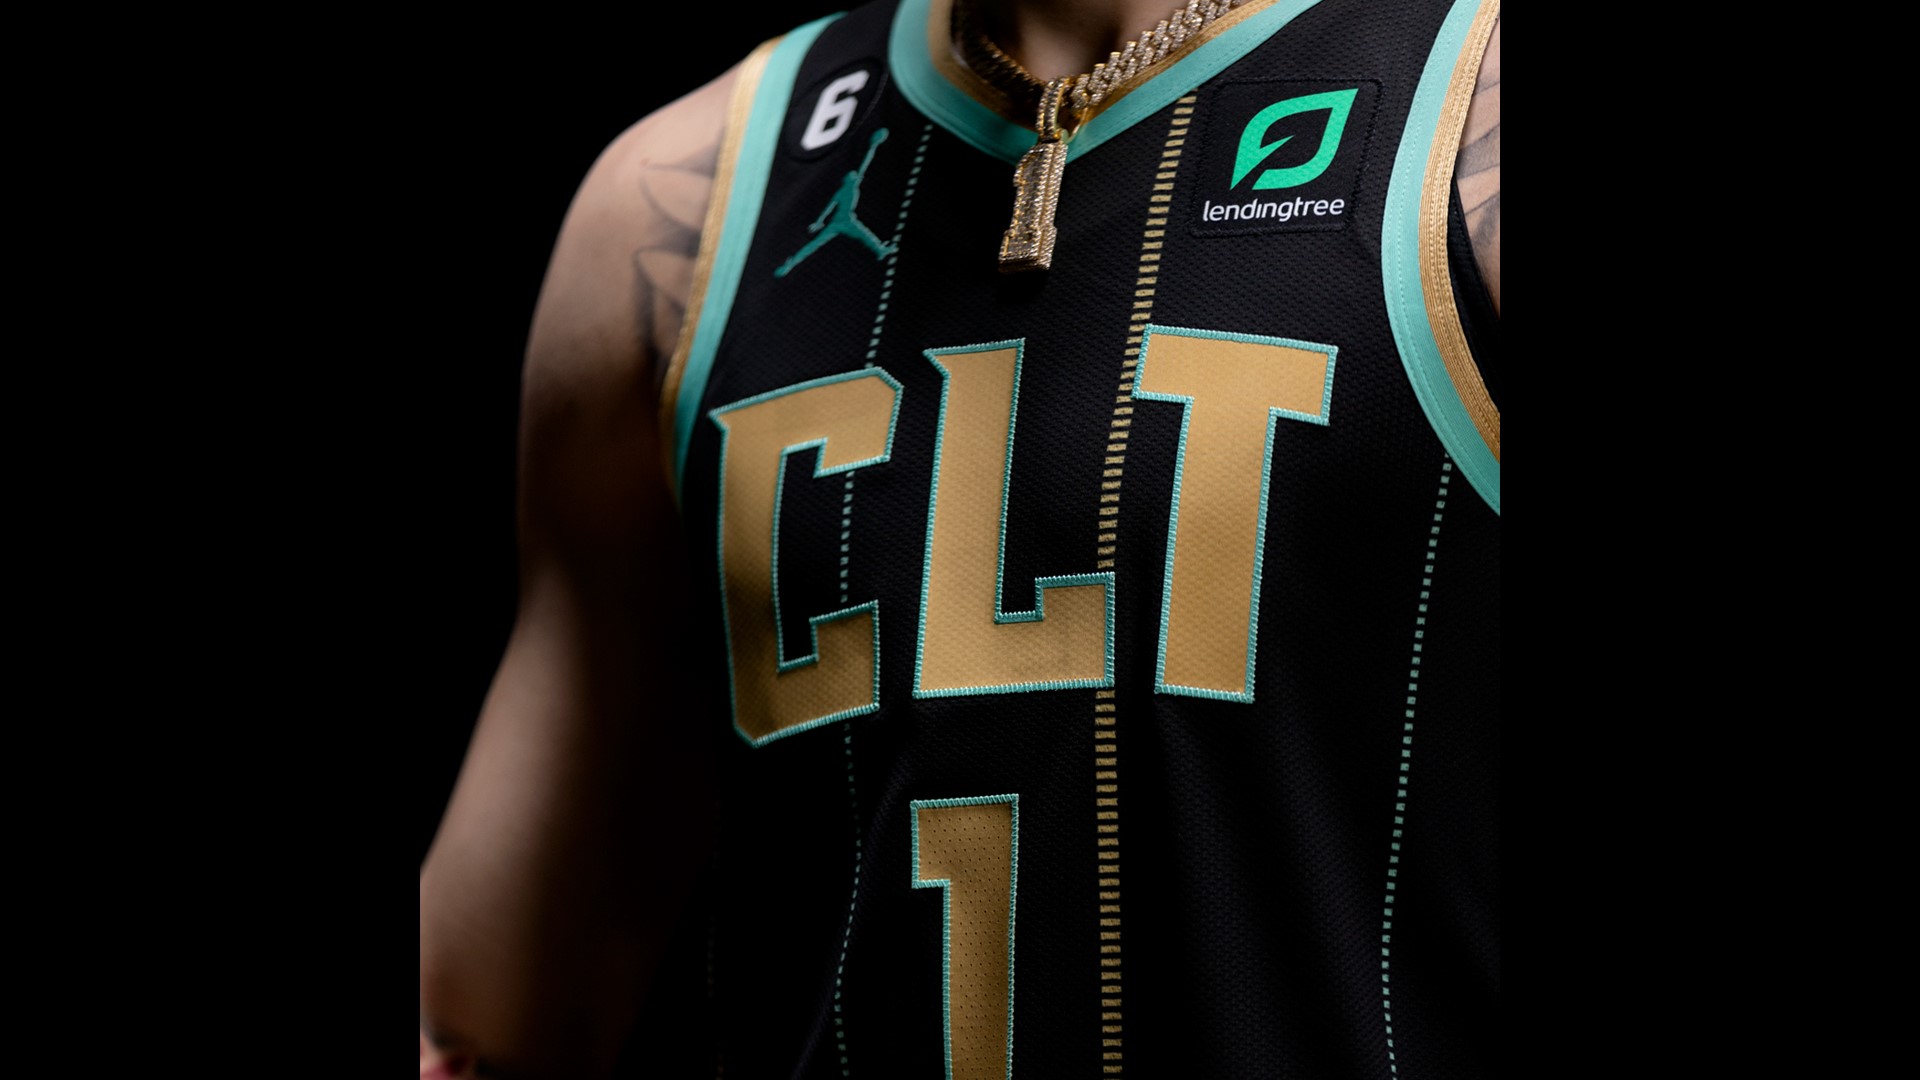 Charlotte unveil new City Edition uniforms, court